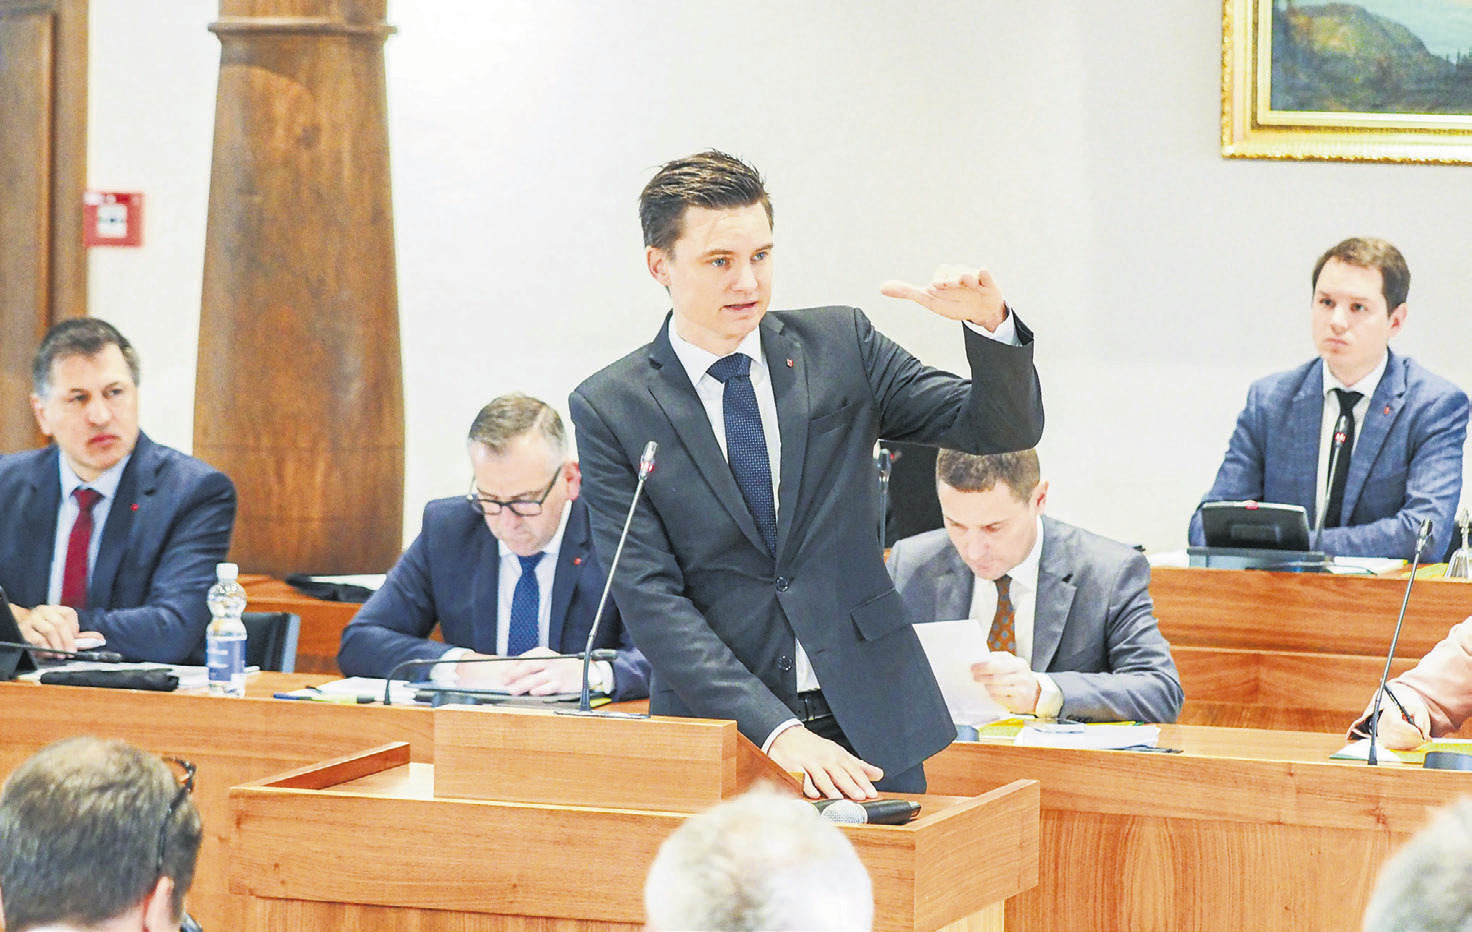 Kantonsrat: Unterstützung für Kantonsgericht und Berufslehre